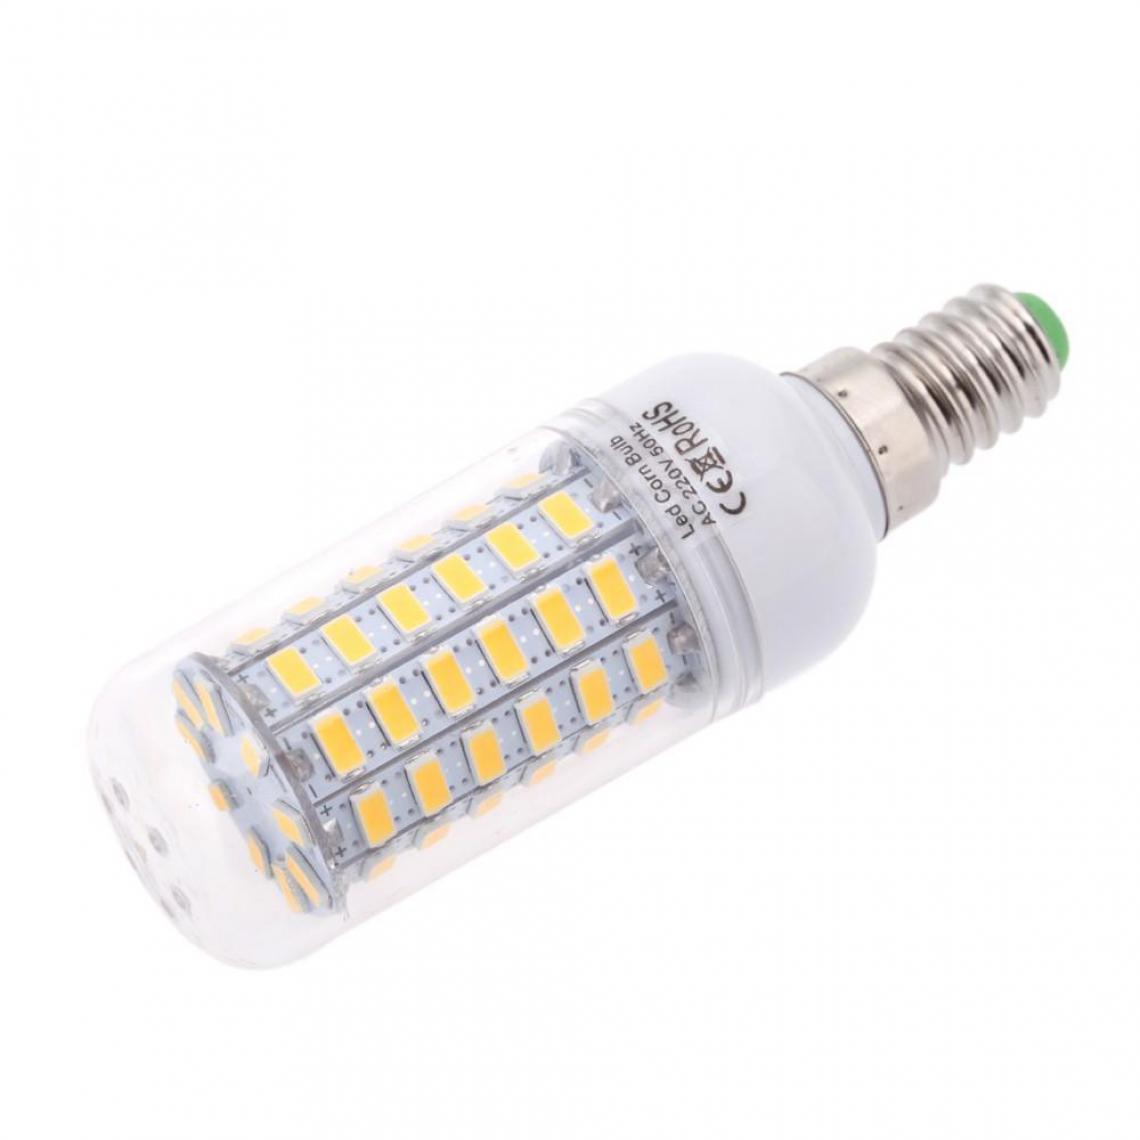 Justgreenbox - Ampoule de maïs à économie d'énergie 360 degrés 200-240V E14, Natural Blanc, 20W - Ampoules LED